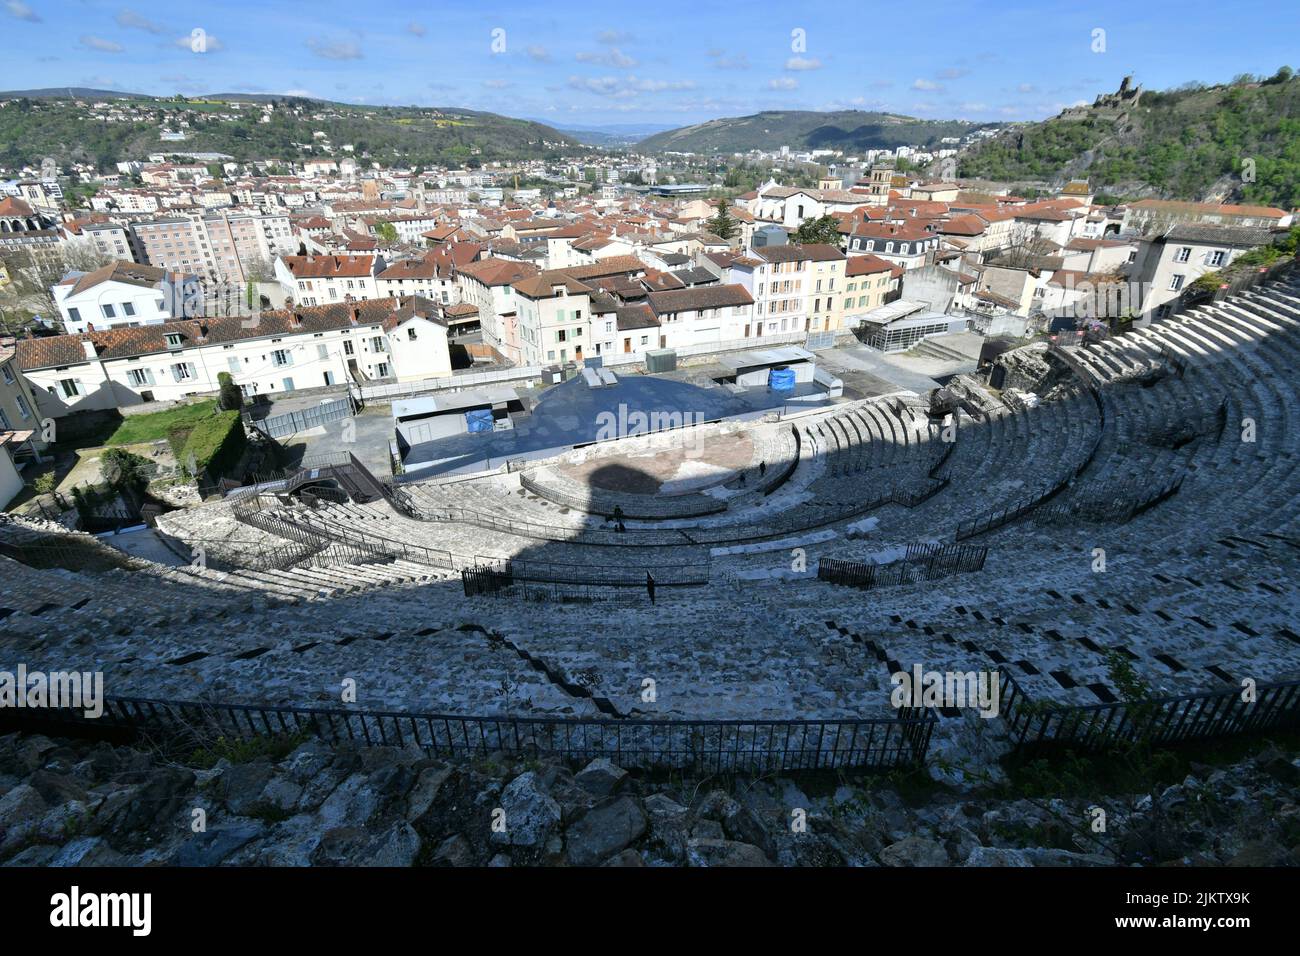 Bild des römischen Theaters Vienne im Vordergrund und der Stadt Vienne im Hintergrund. Es handelt sich um ein Theater aus dem ersten Jahrhundert nach Christus, das einst erwähnt wurde Stockfoto